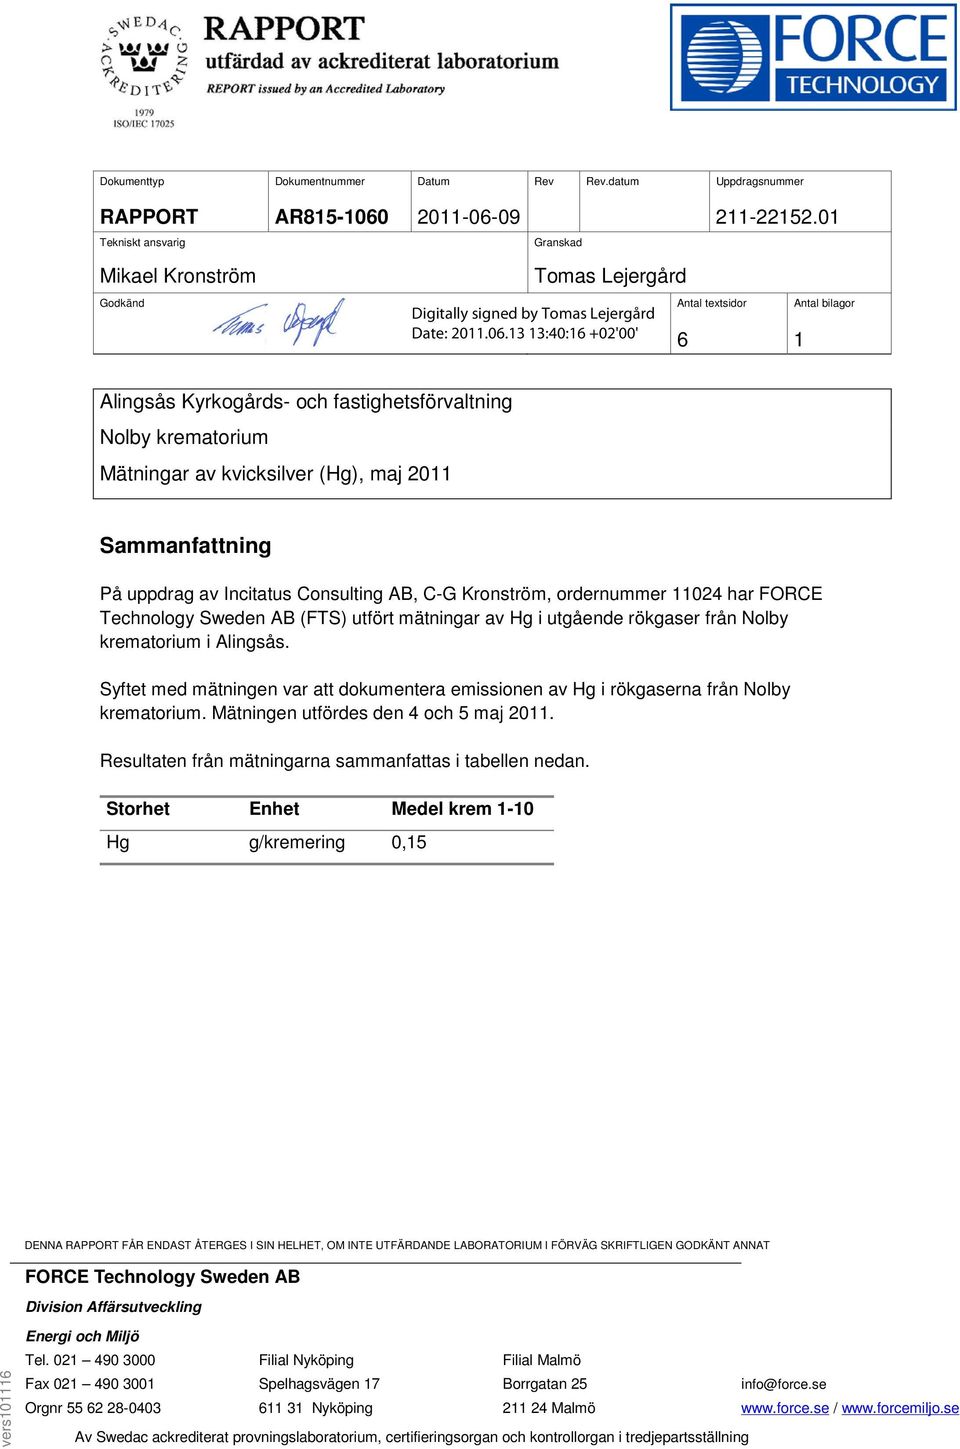 (Hg), maj 2011 Sammanfattning På uppdrag av Incitatus Consulting AB, C-G Kronström, ordernummer 11024 har FORCE Technology Sweden AB (FTS) utfört mätningar av Hg i utgående rökgaser från Nolby